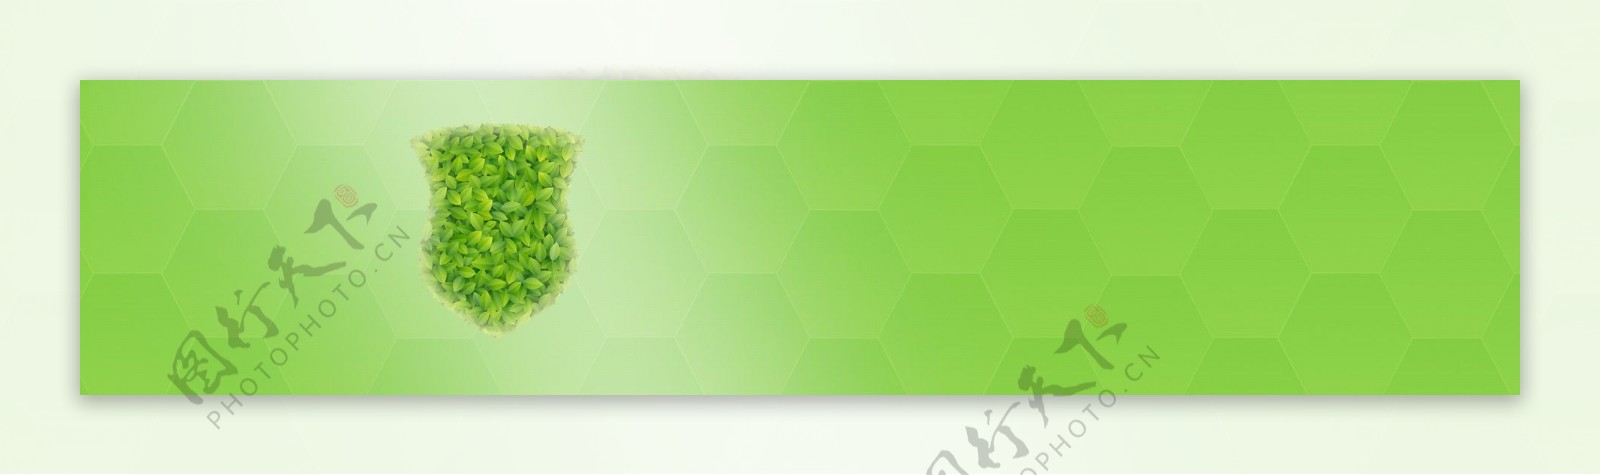 绿色蜂巢底纹背景图